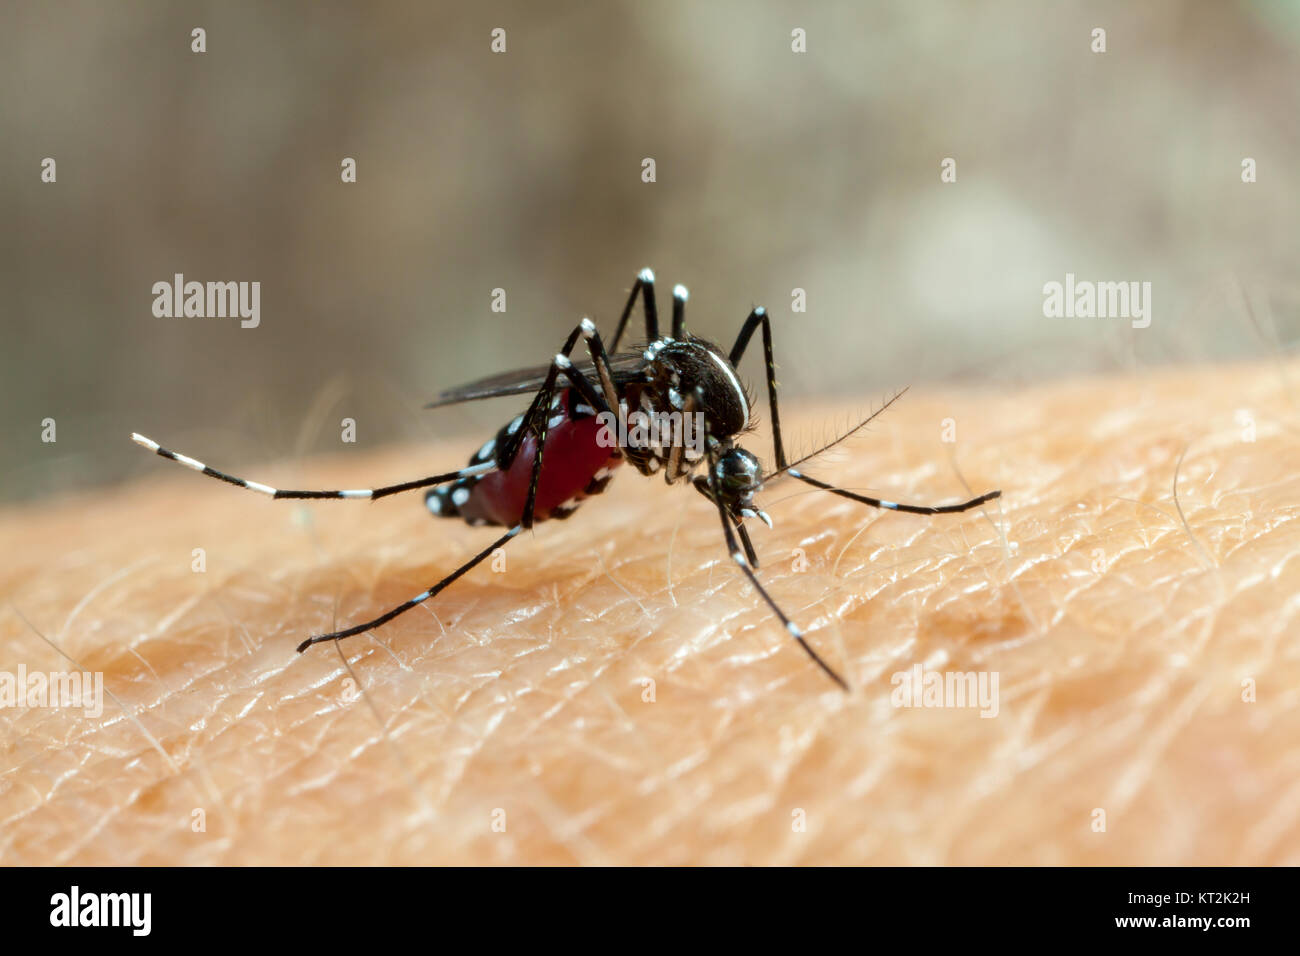 Dengue-fieber, zika und chikungunya Fieber Stechmücken (Aedes aegypti) bitting menschliche Haut - trinken Blut Stockfoto